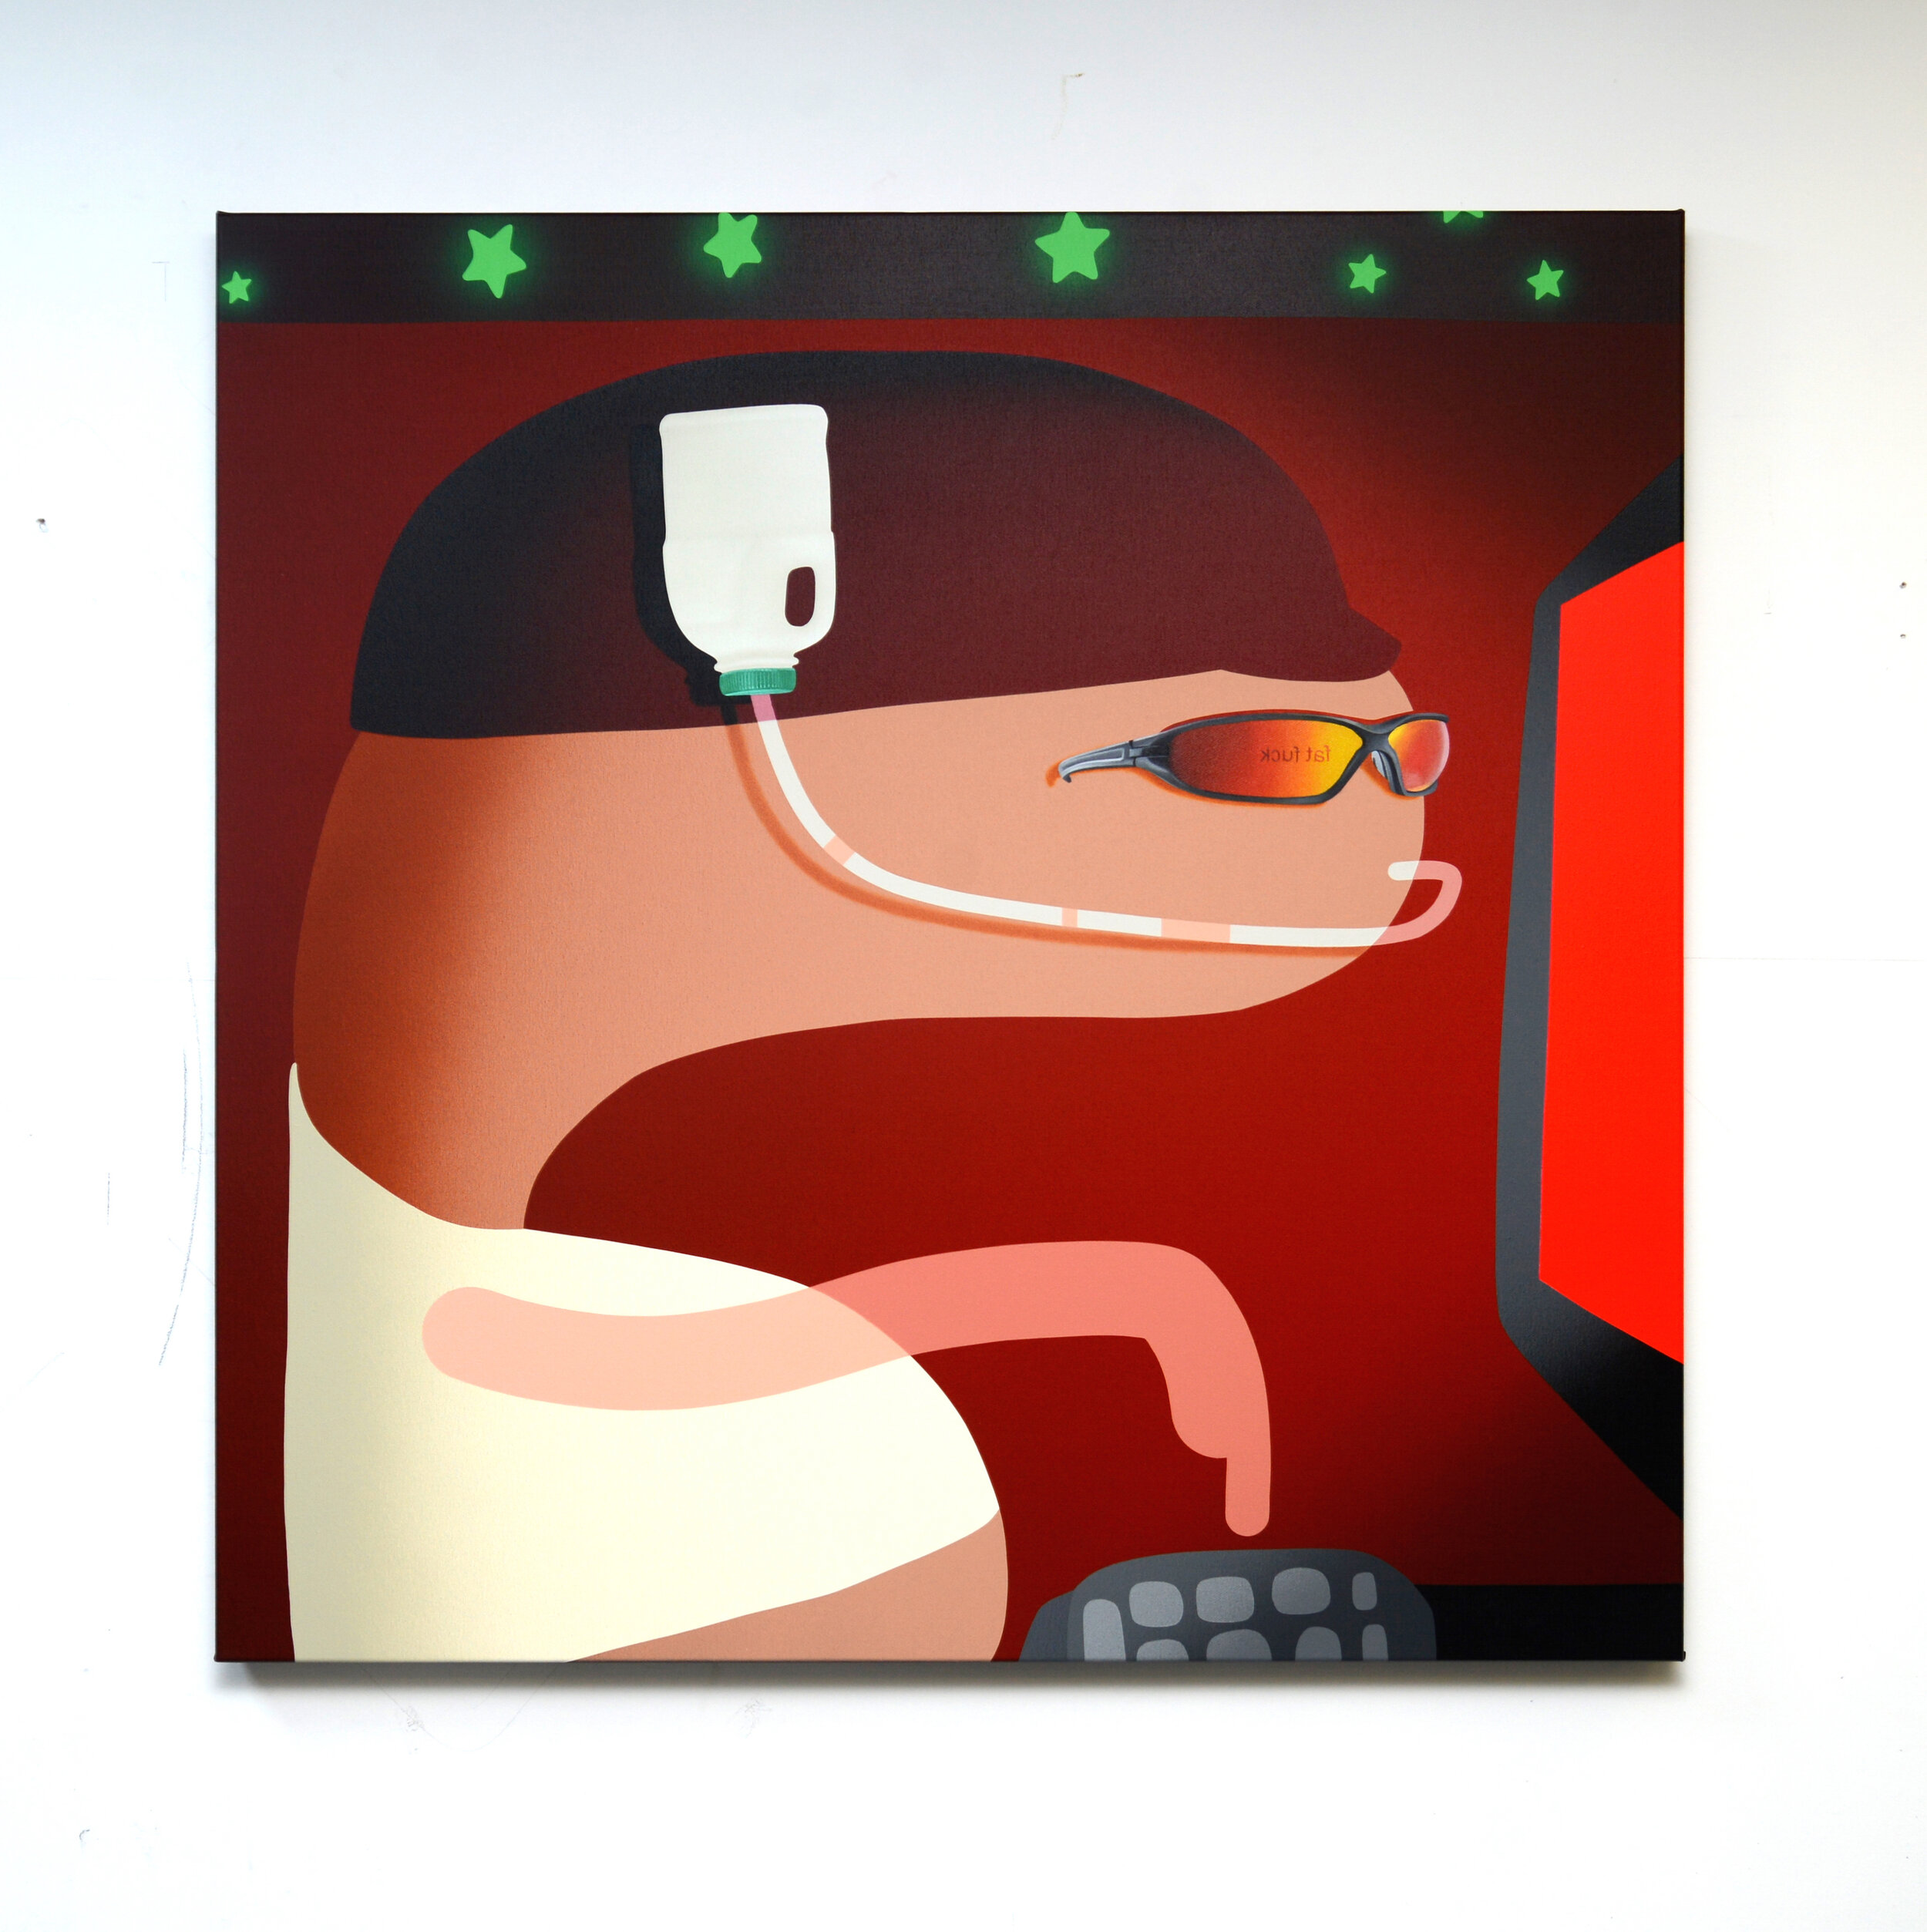 'Trollin', 2019, acrylic and oil on canvas, 115cm x 115cm